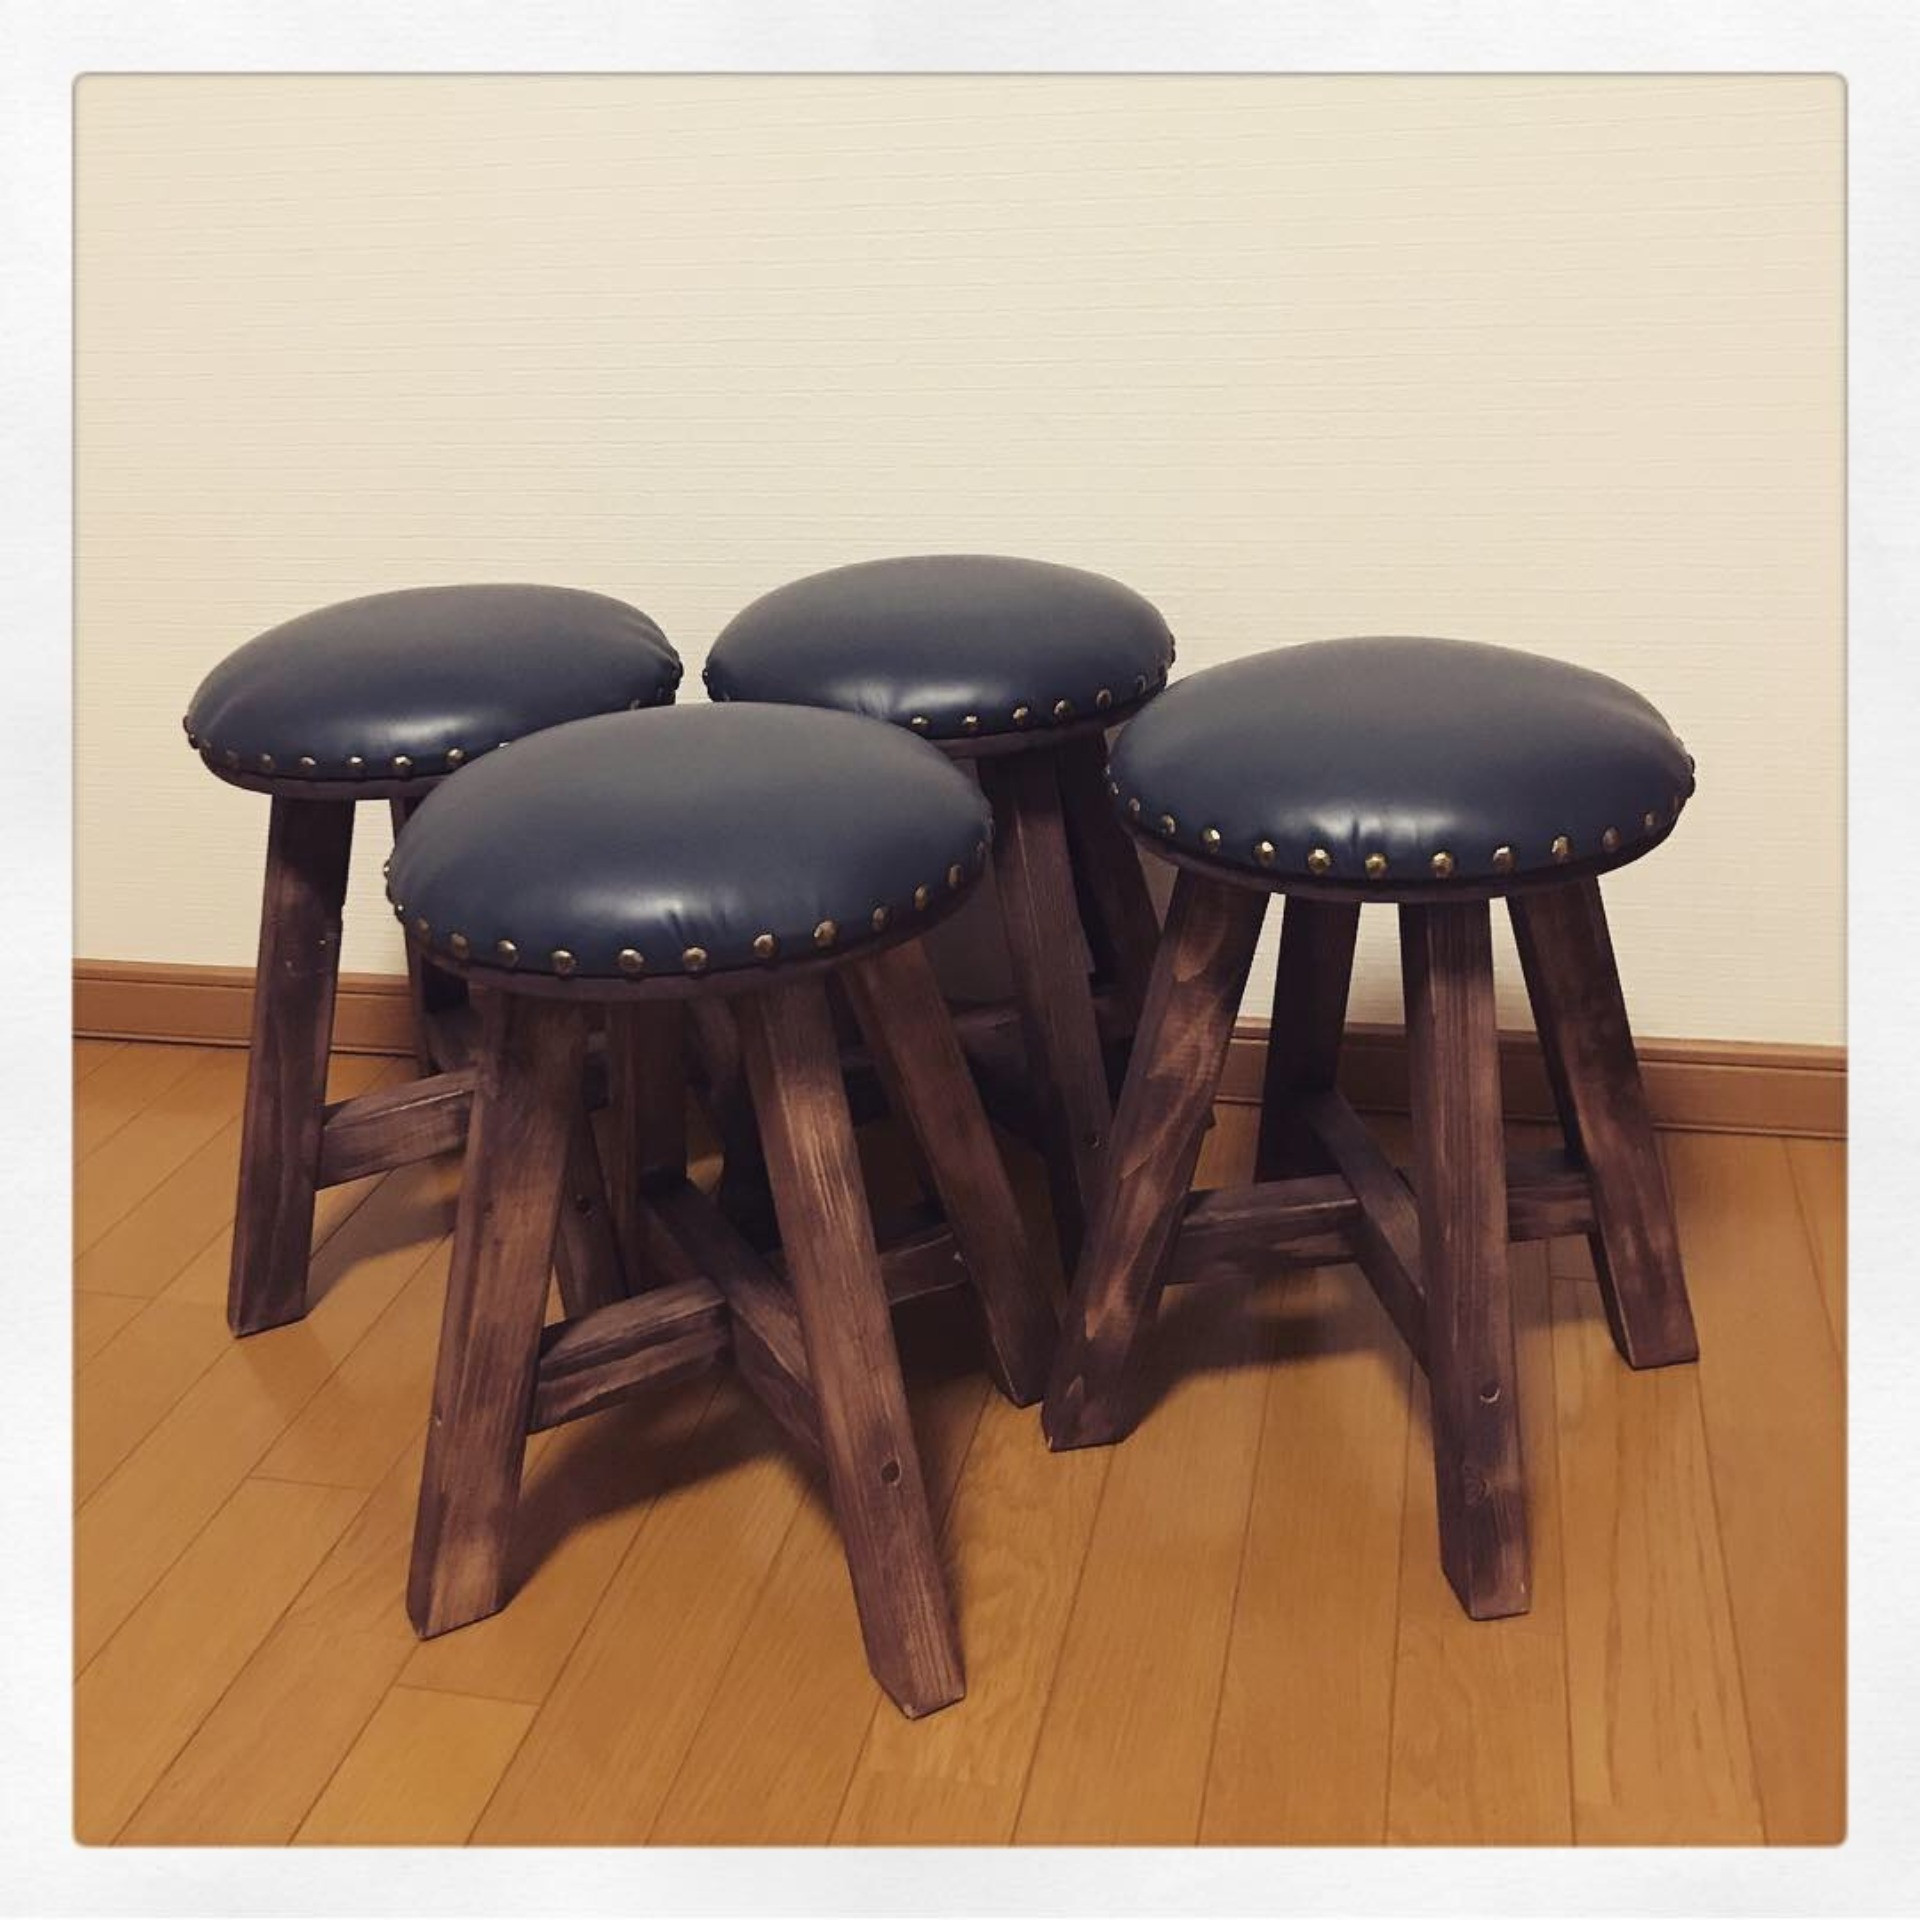 オーダーメイドで革を使った椅子をご提供するtukuru Woodwork fujimotoへご注文ください